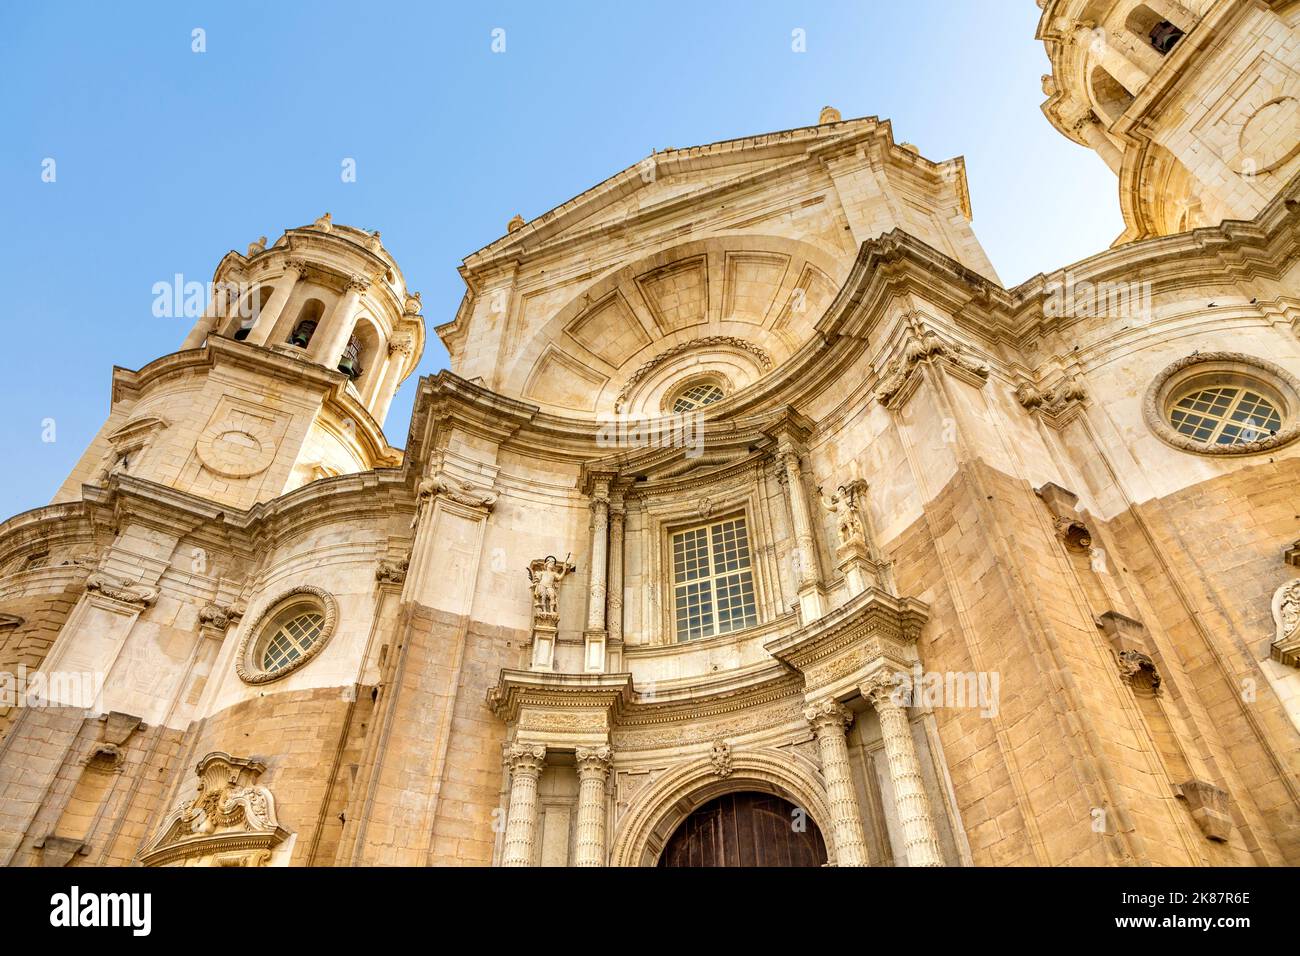 Façade de la cathédrale de Cadix de style baroque et néoclassique (Catedral de Cádiz, Catedral de Santa Cruz de Cádiz), Cadix, Andalousie, Espagne Banque D'Images